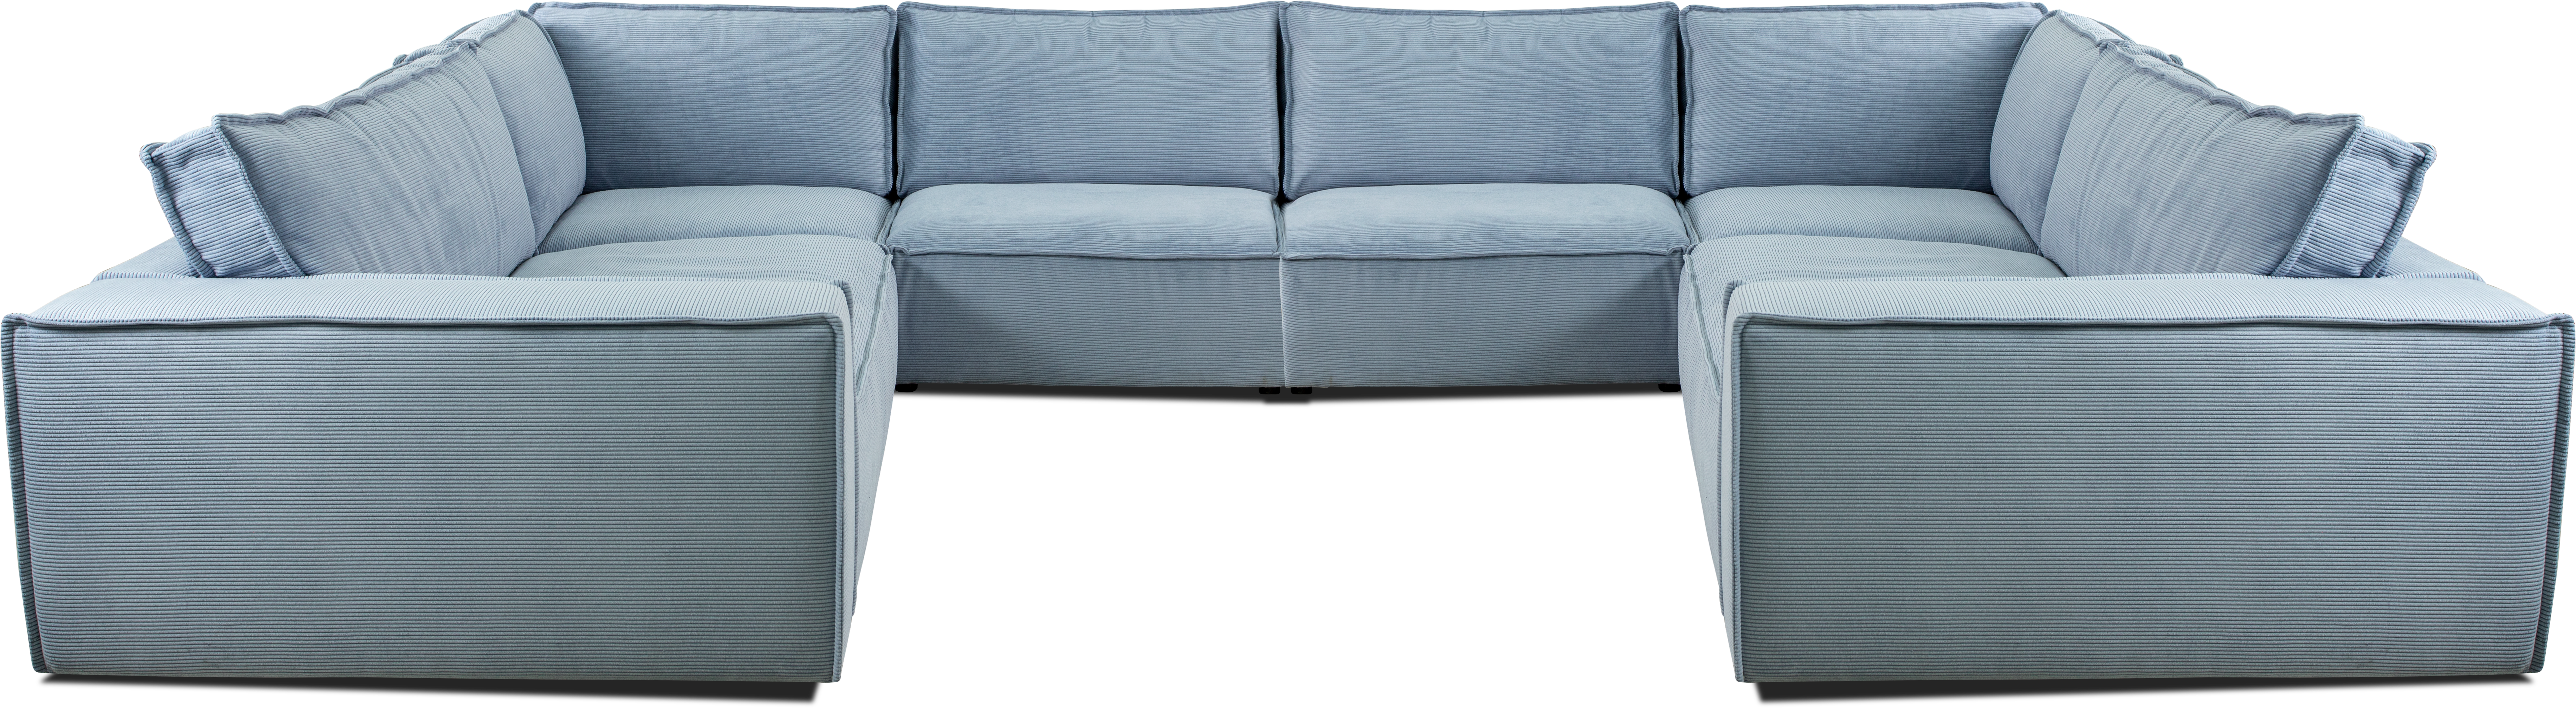 Sivá kombinovateľná modulová sedačka s úložným priestorom.